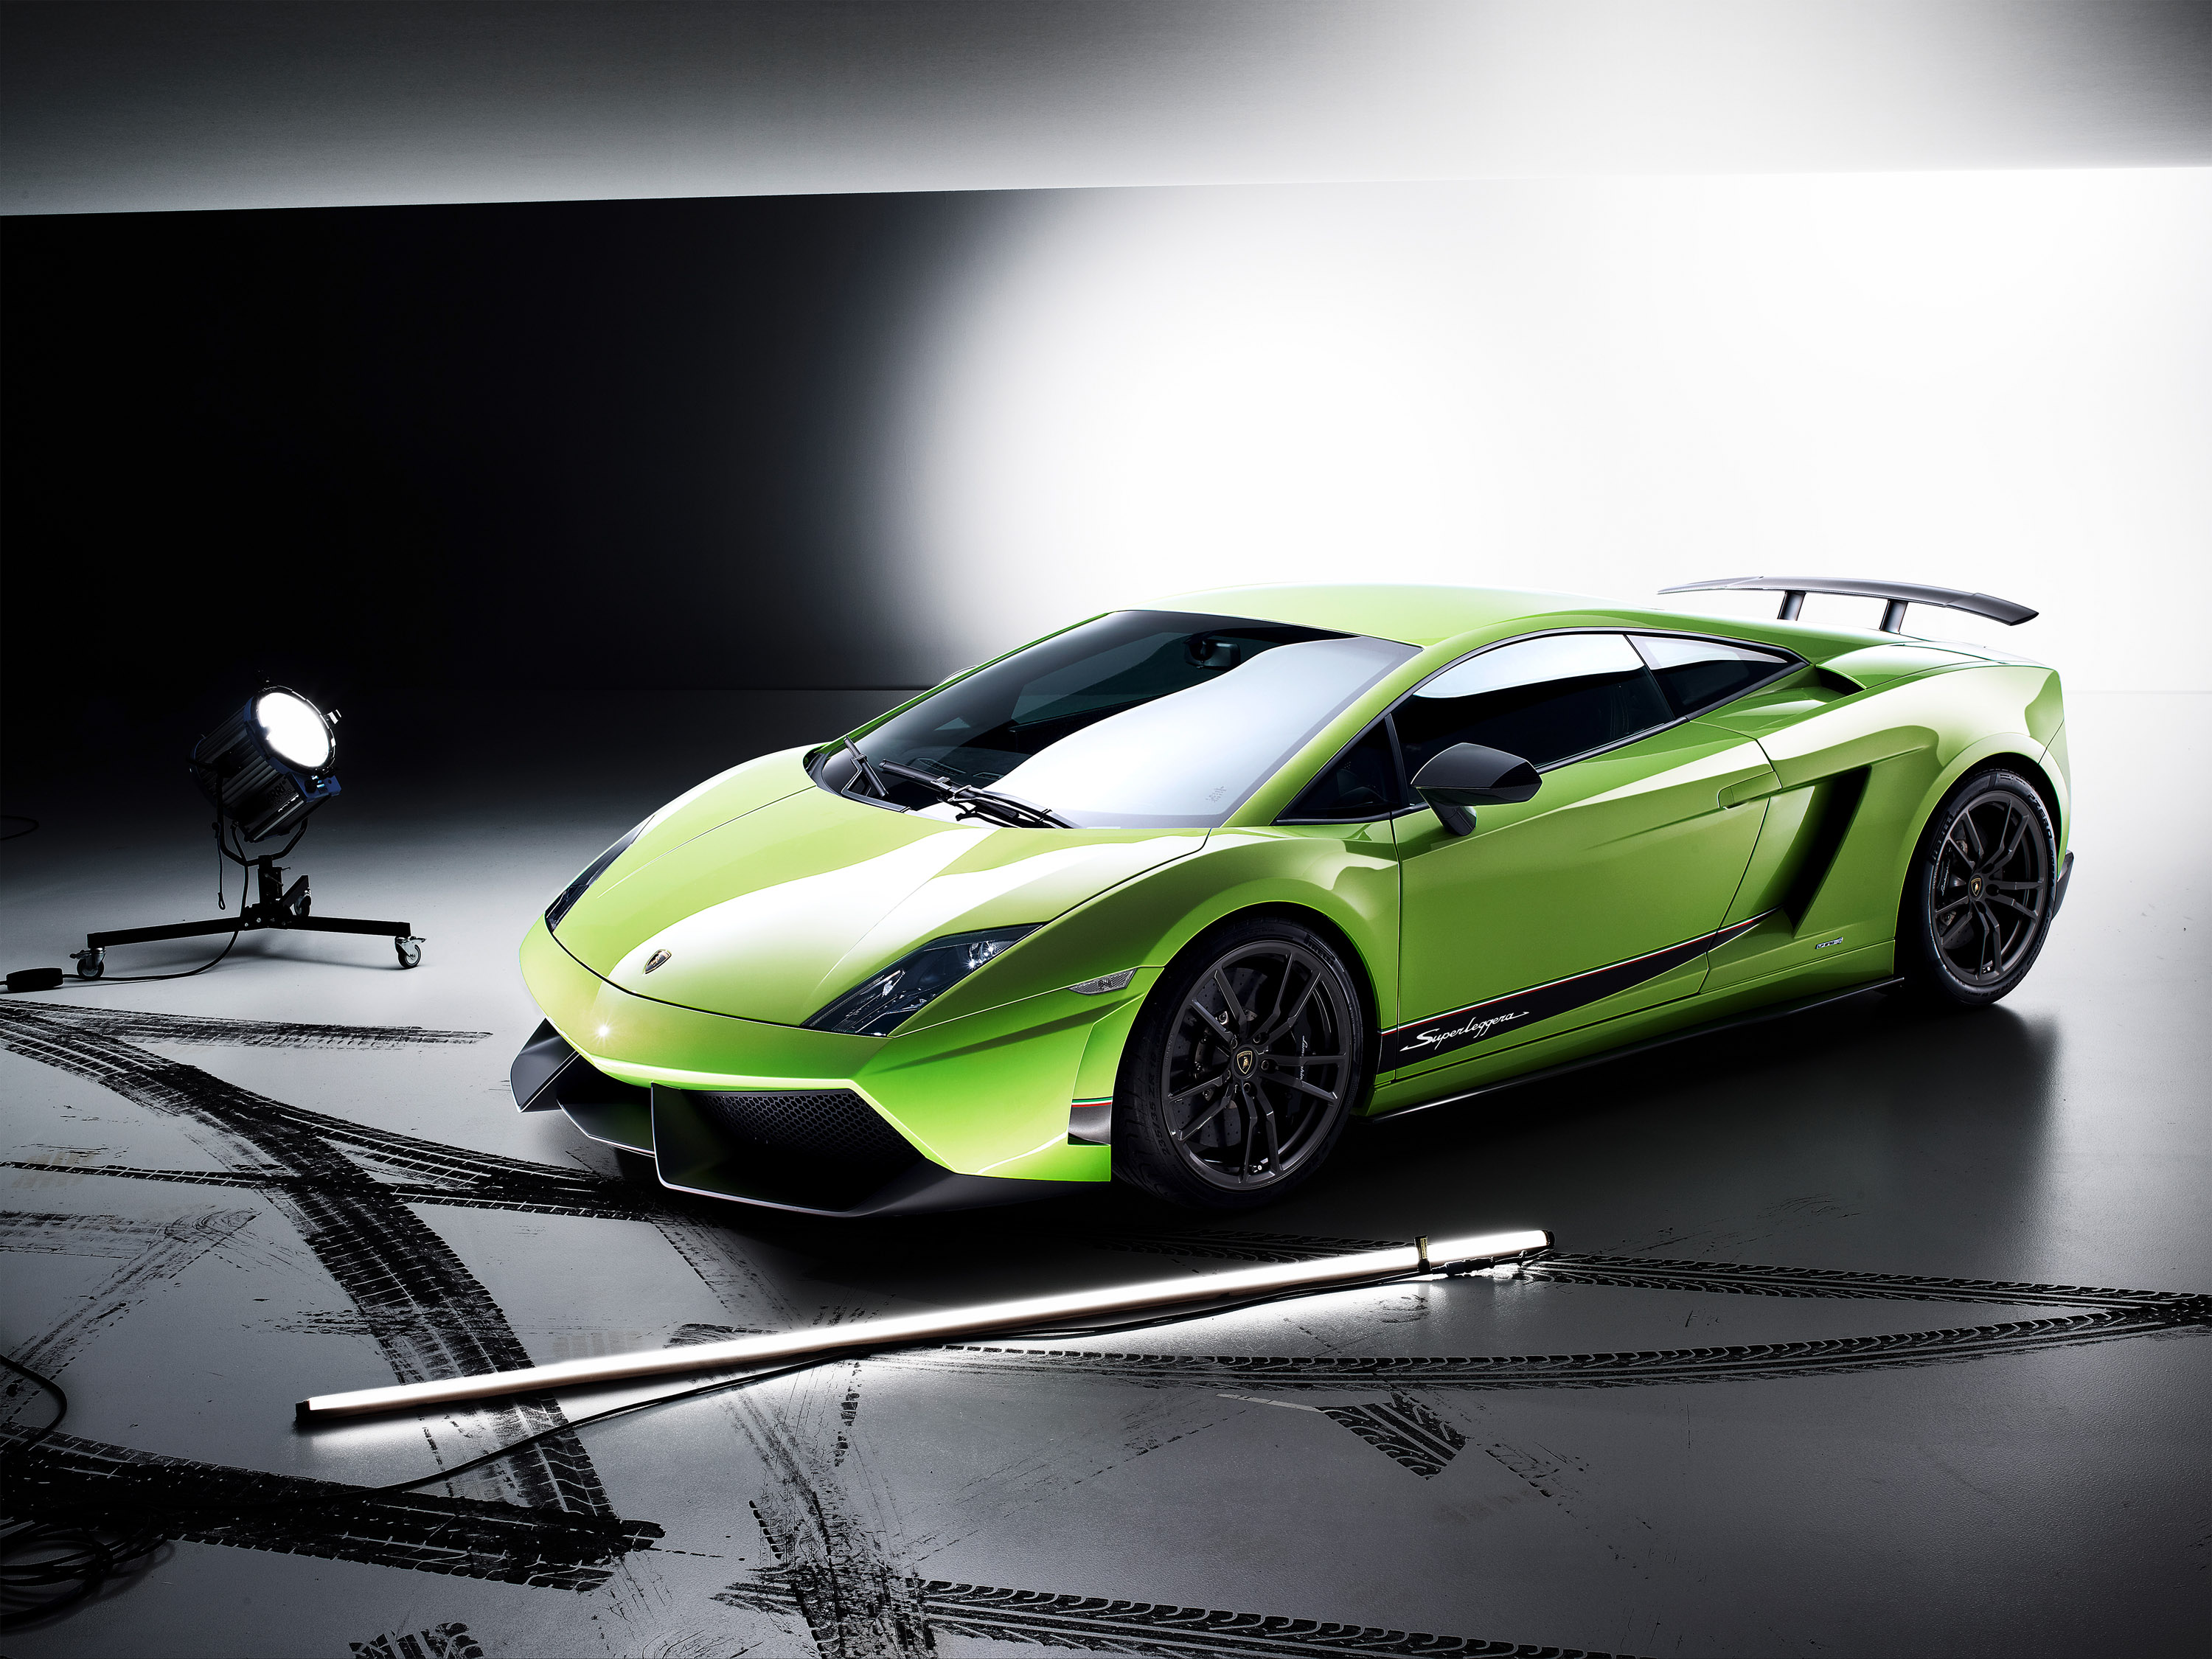 cars, Lamborghini, green cars, Lamborghini Gallardo LP570-4 Superleggera - desktop wallpaper